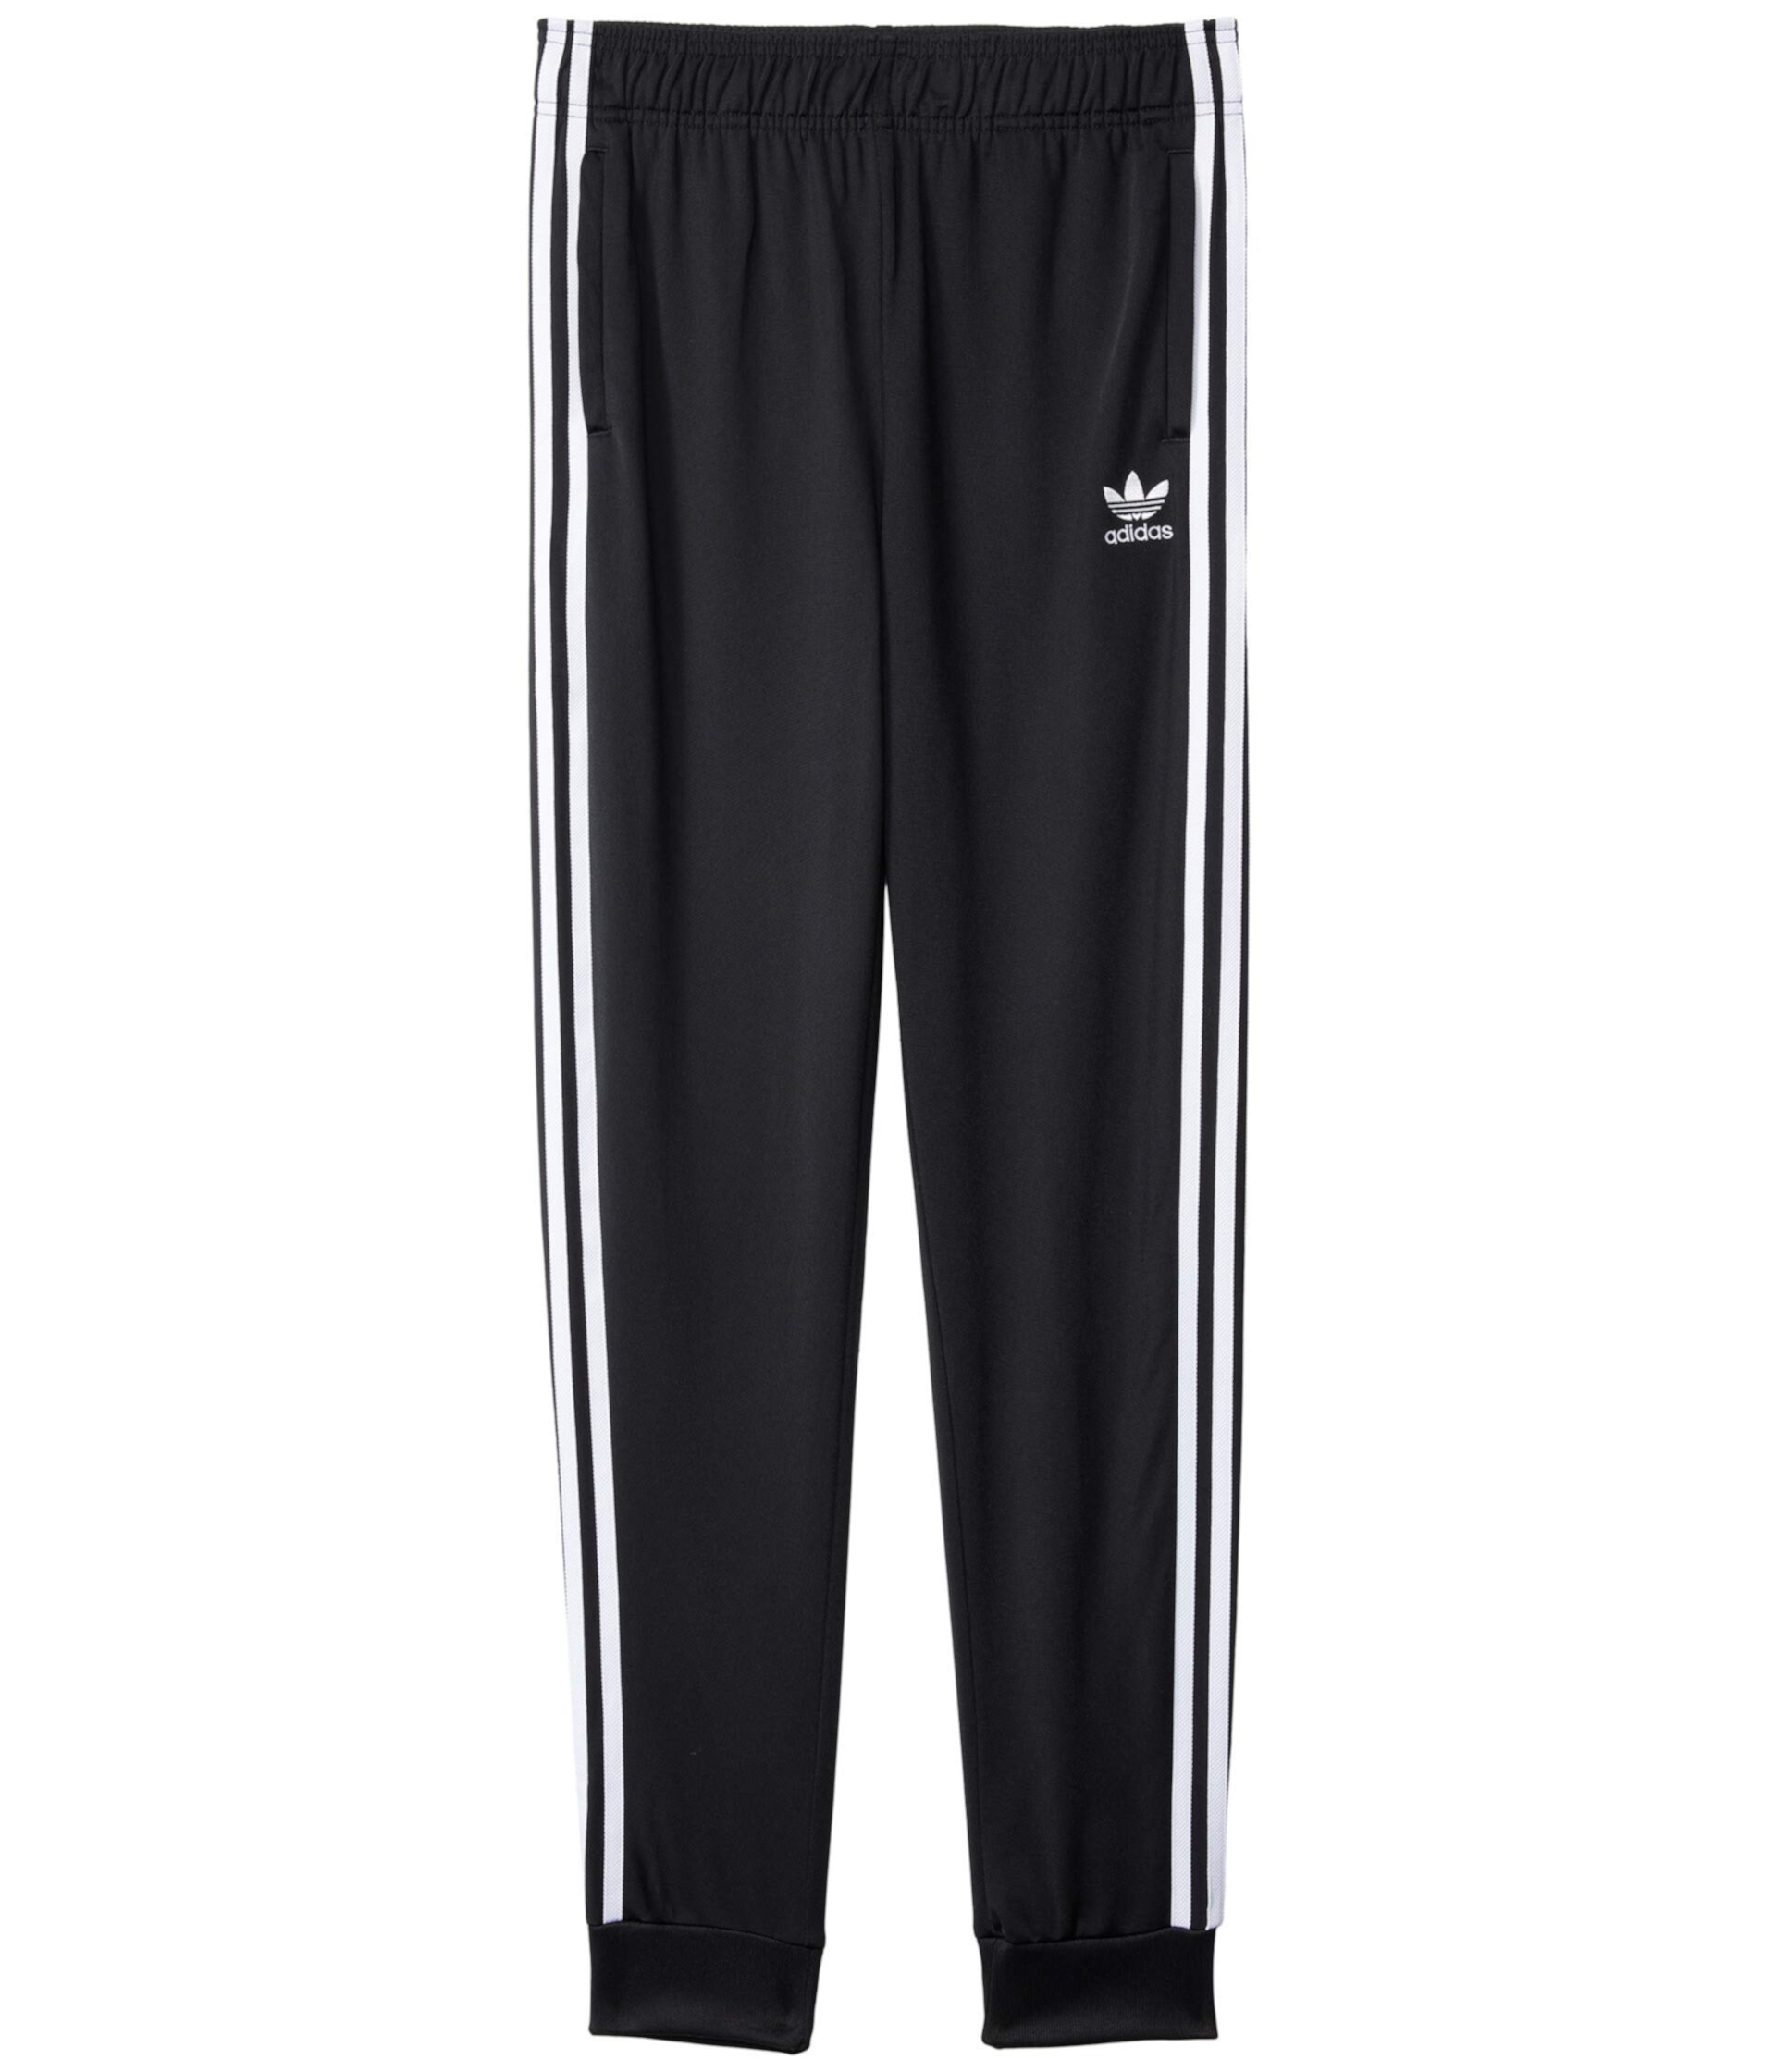 Спортивные штаны Superstar (для детей младшего и школьного возраста) Adidas